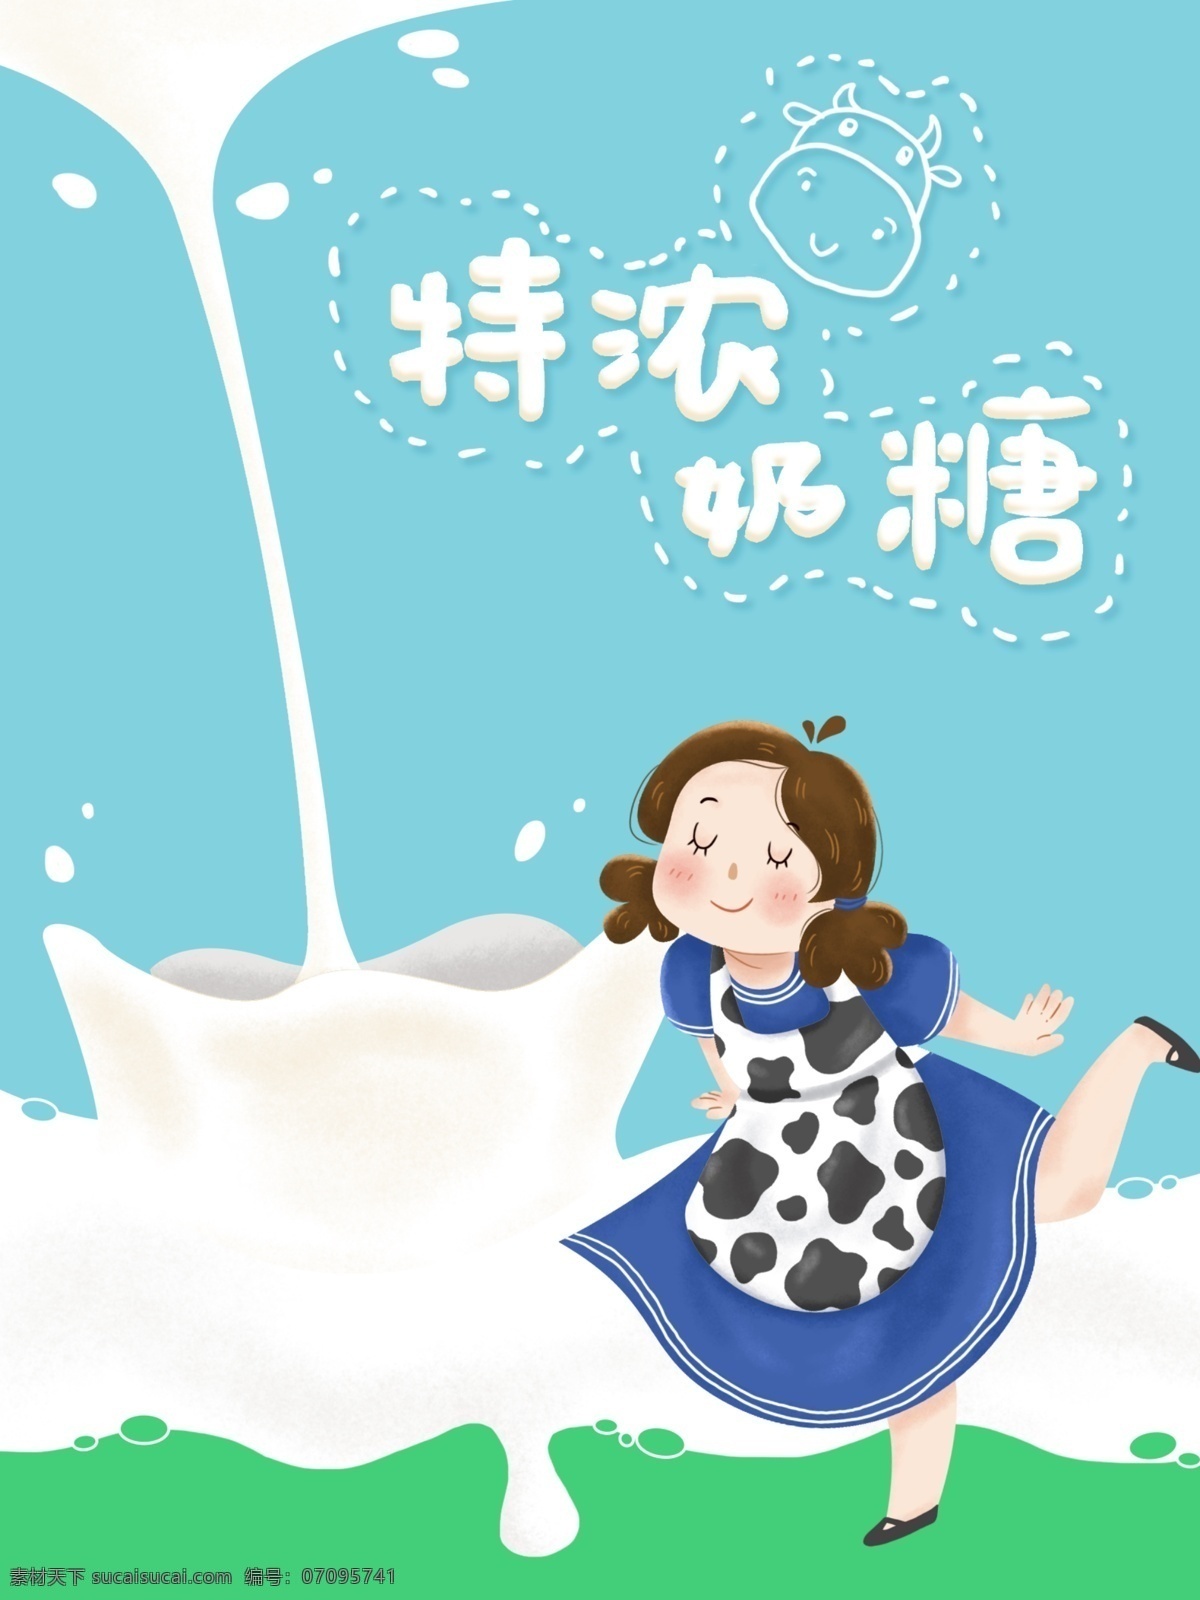 可爱 风 食品 奶糖 包装设计 牛奶 包装 插画 手绘 小清新 女孩